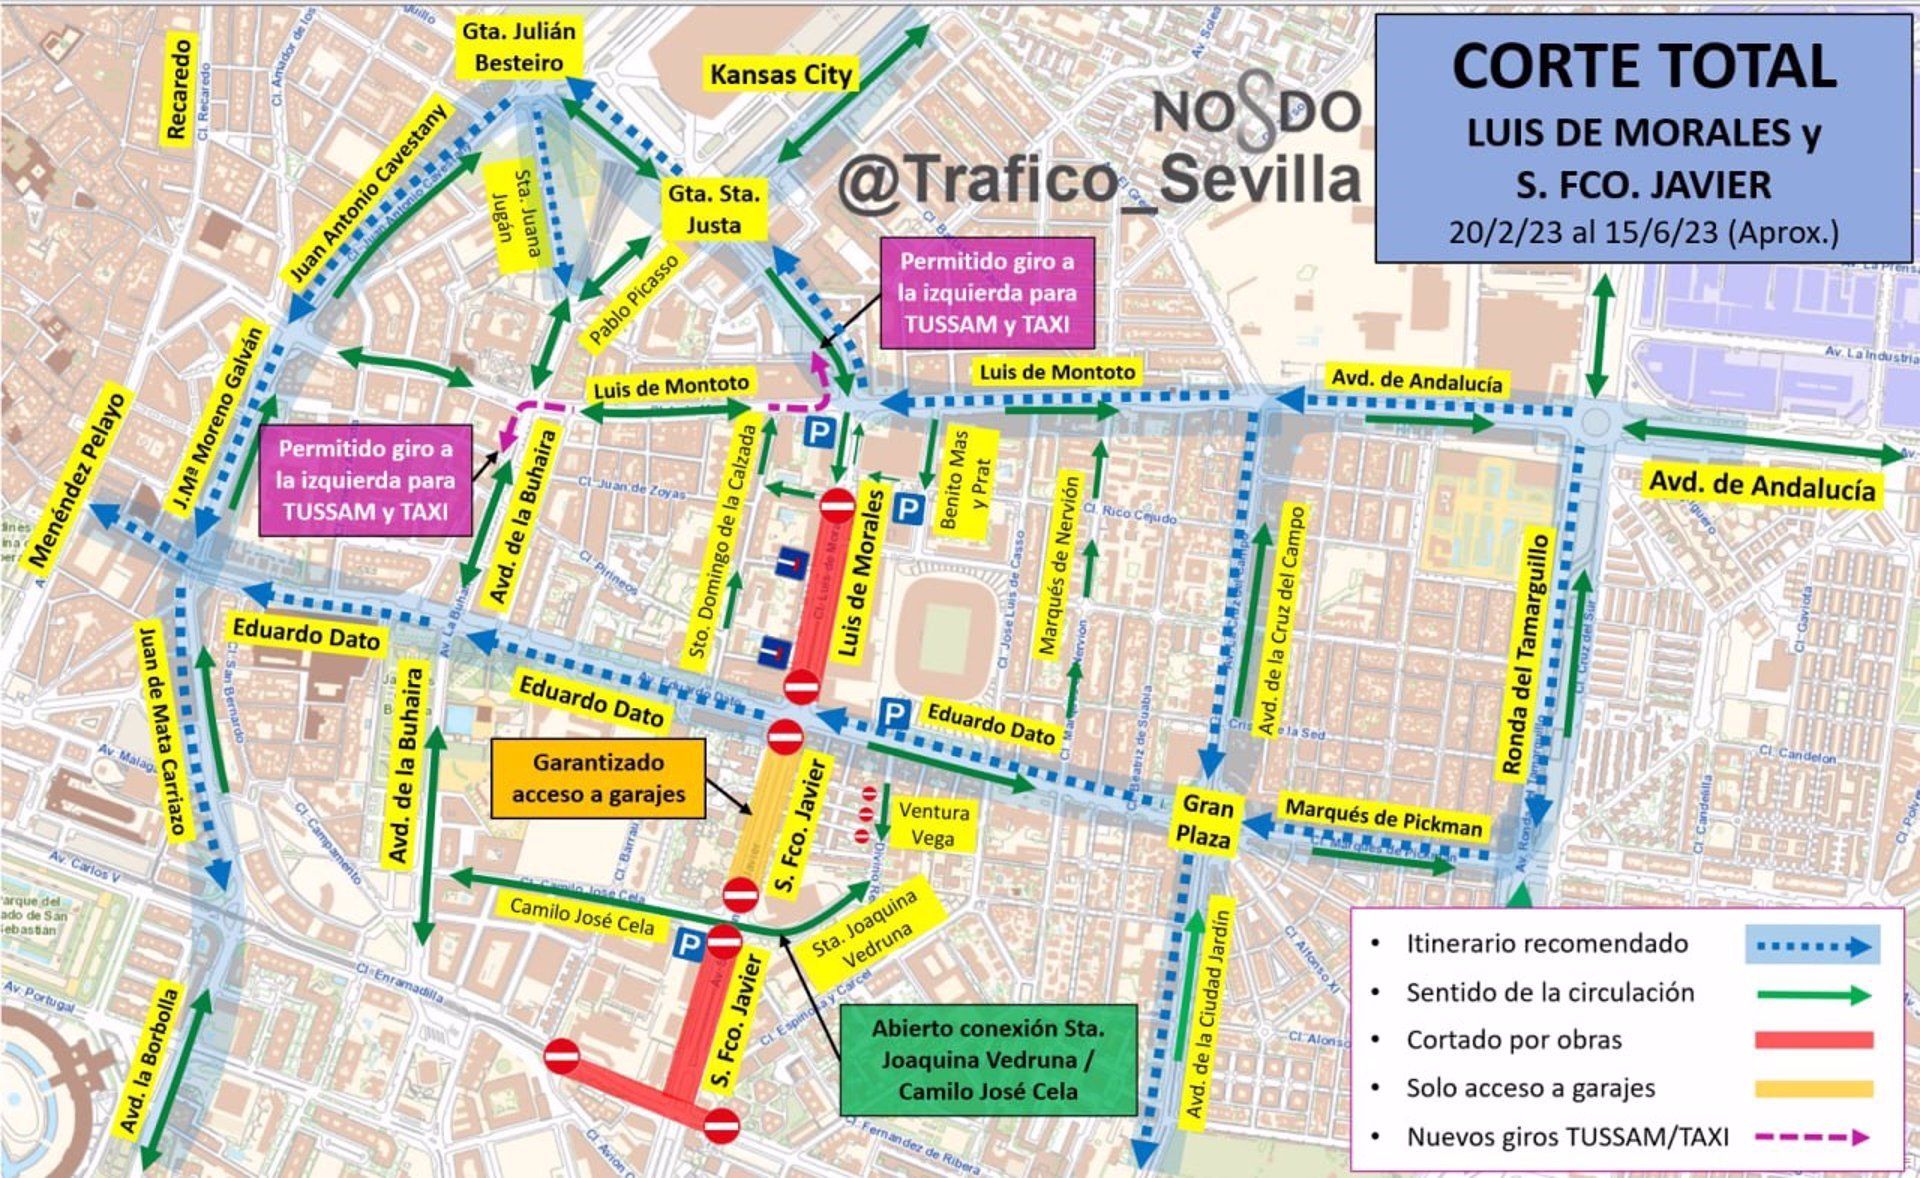 Sevilla en obras: corte total de Luis de Morales e inicio de la línea 3 de Metro tras 14 años.